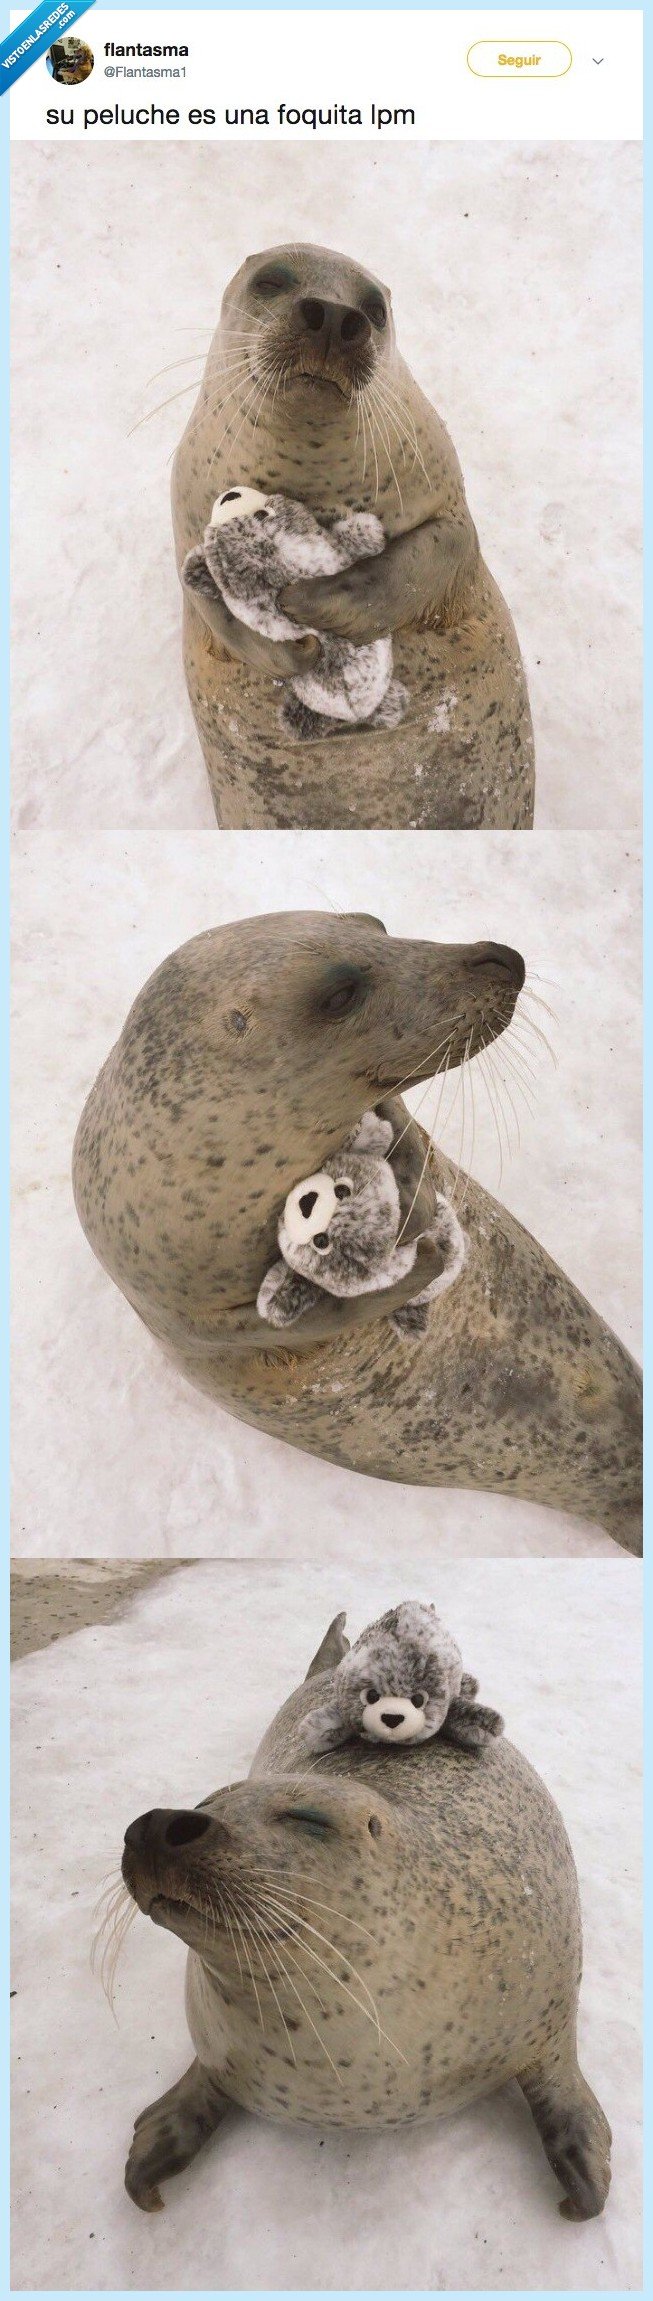 498176 - El único propósito de esta foca con su peluche bebé foca es alegrarte el día, por @Flantasma1